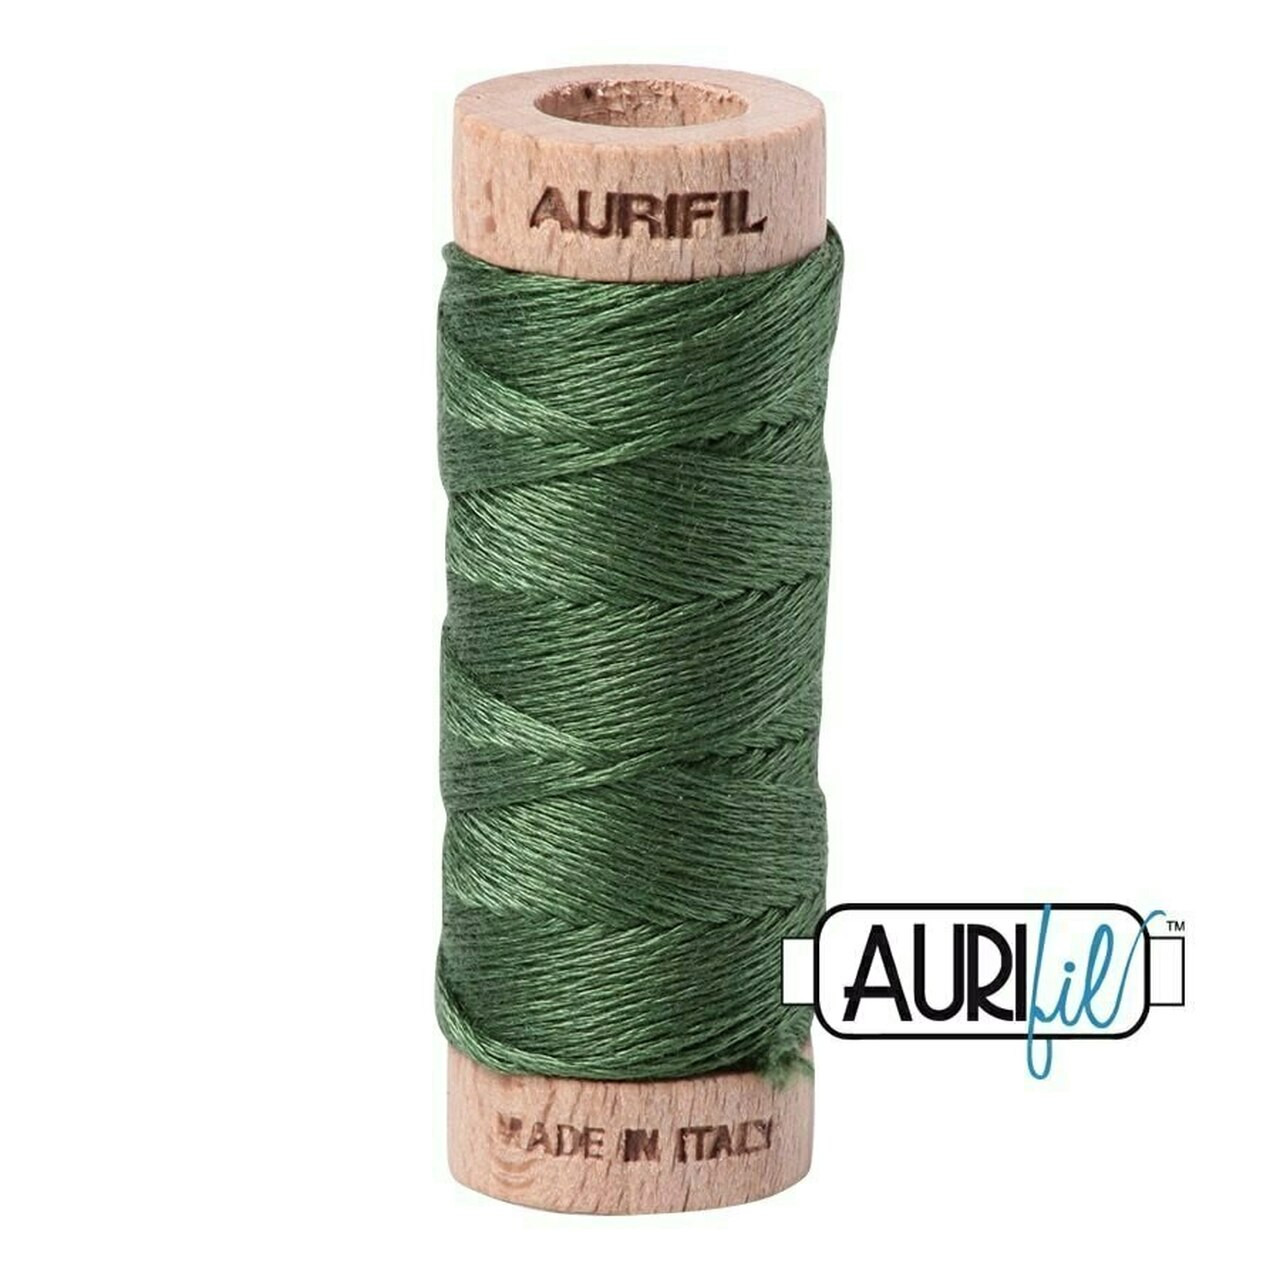 Aurifil 2890 - Very Dark Grass Green